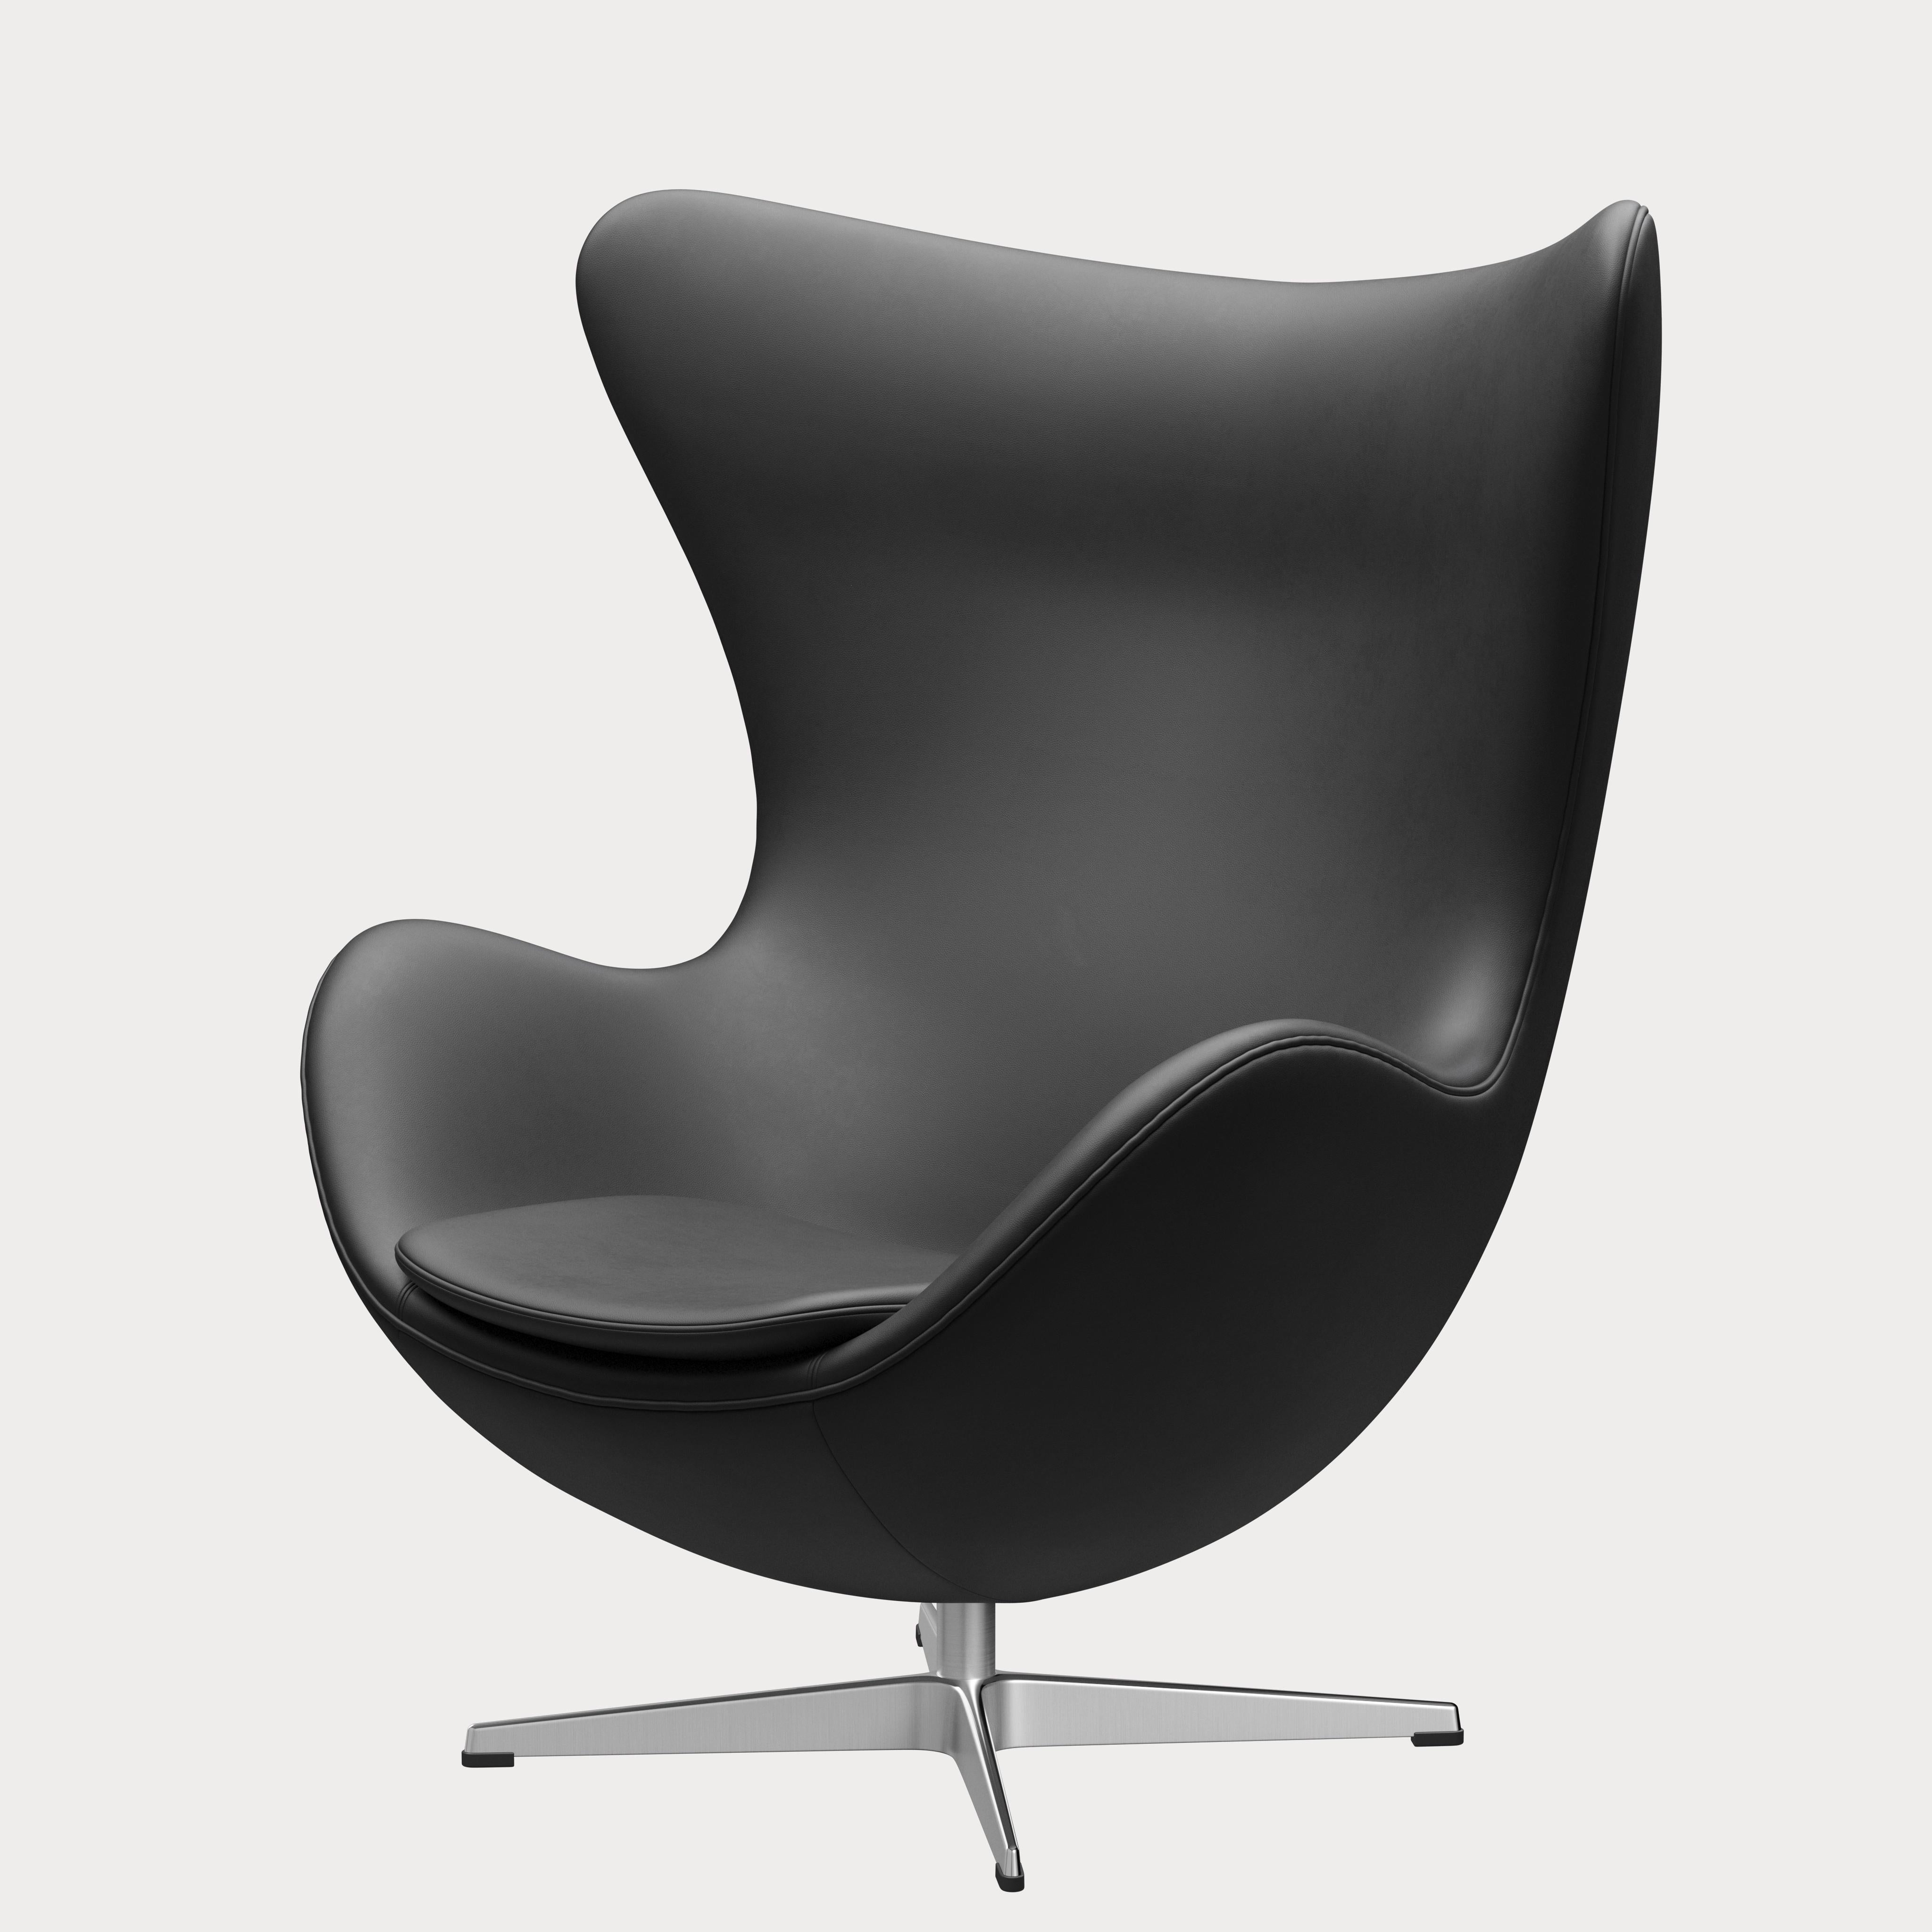 Metal Arne Jacobsen 'Egg' Chair for Fritz Hansen in Leather Upholstery (Cat. 3) For Sale